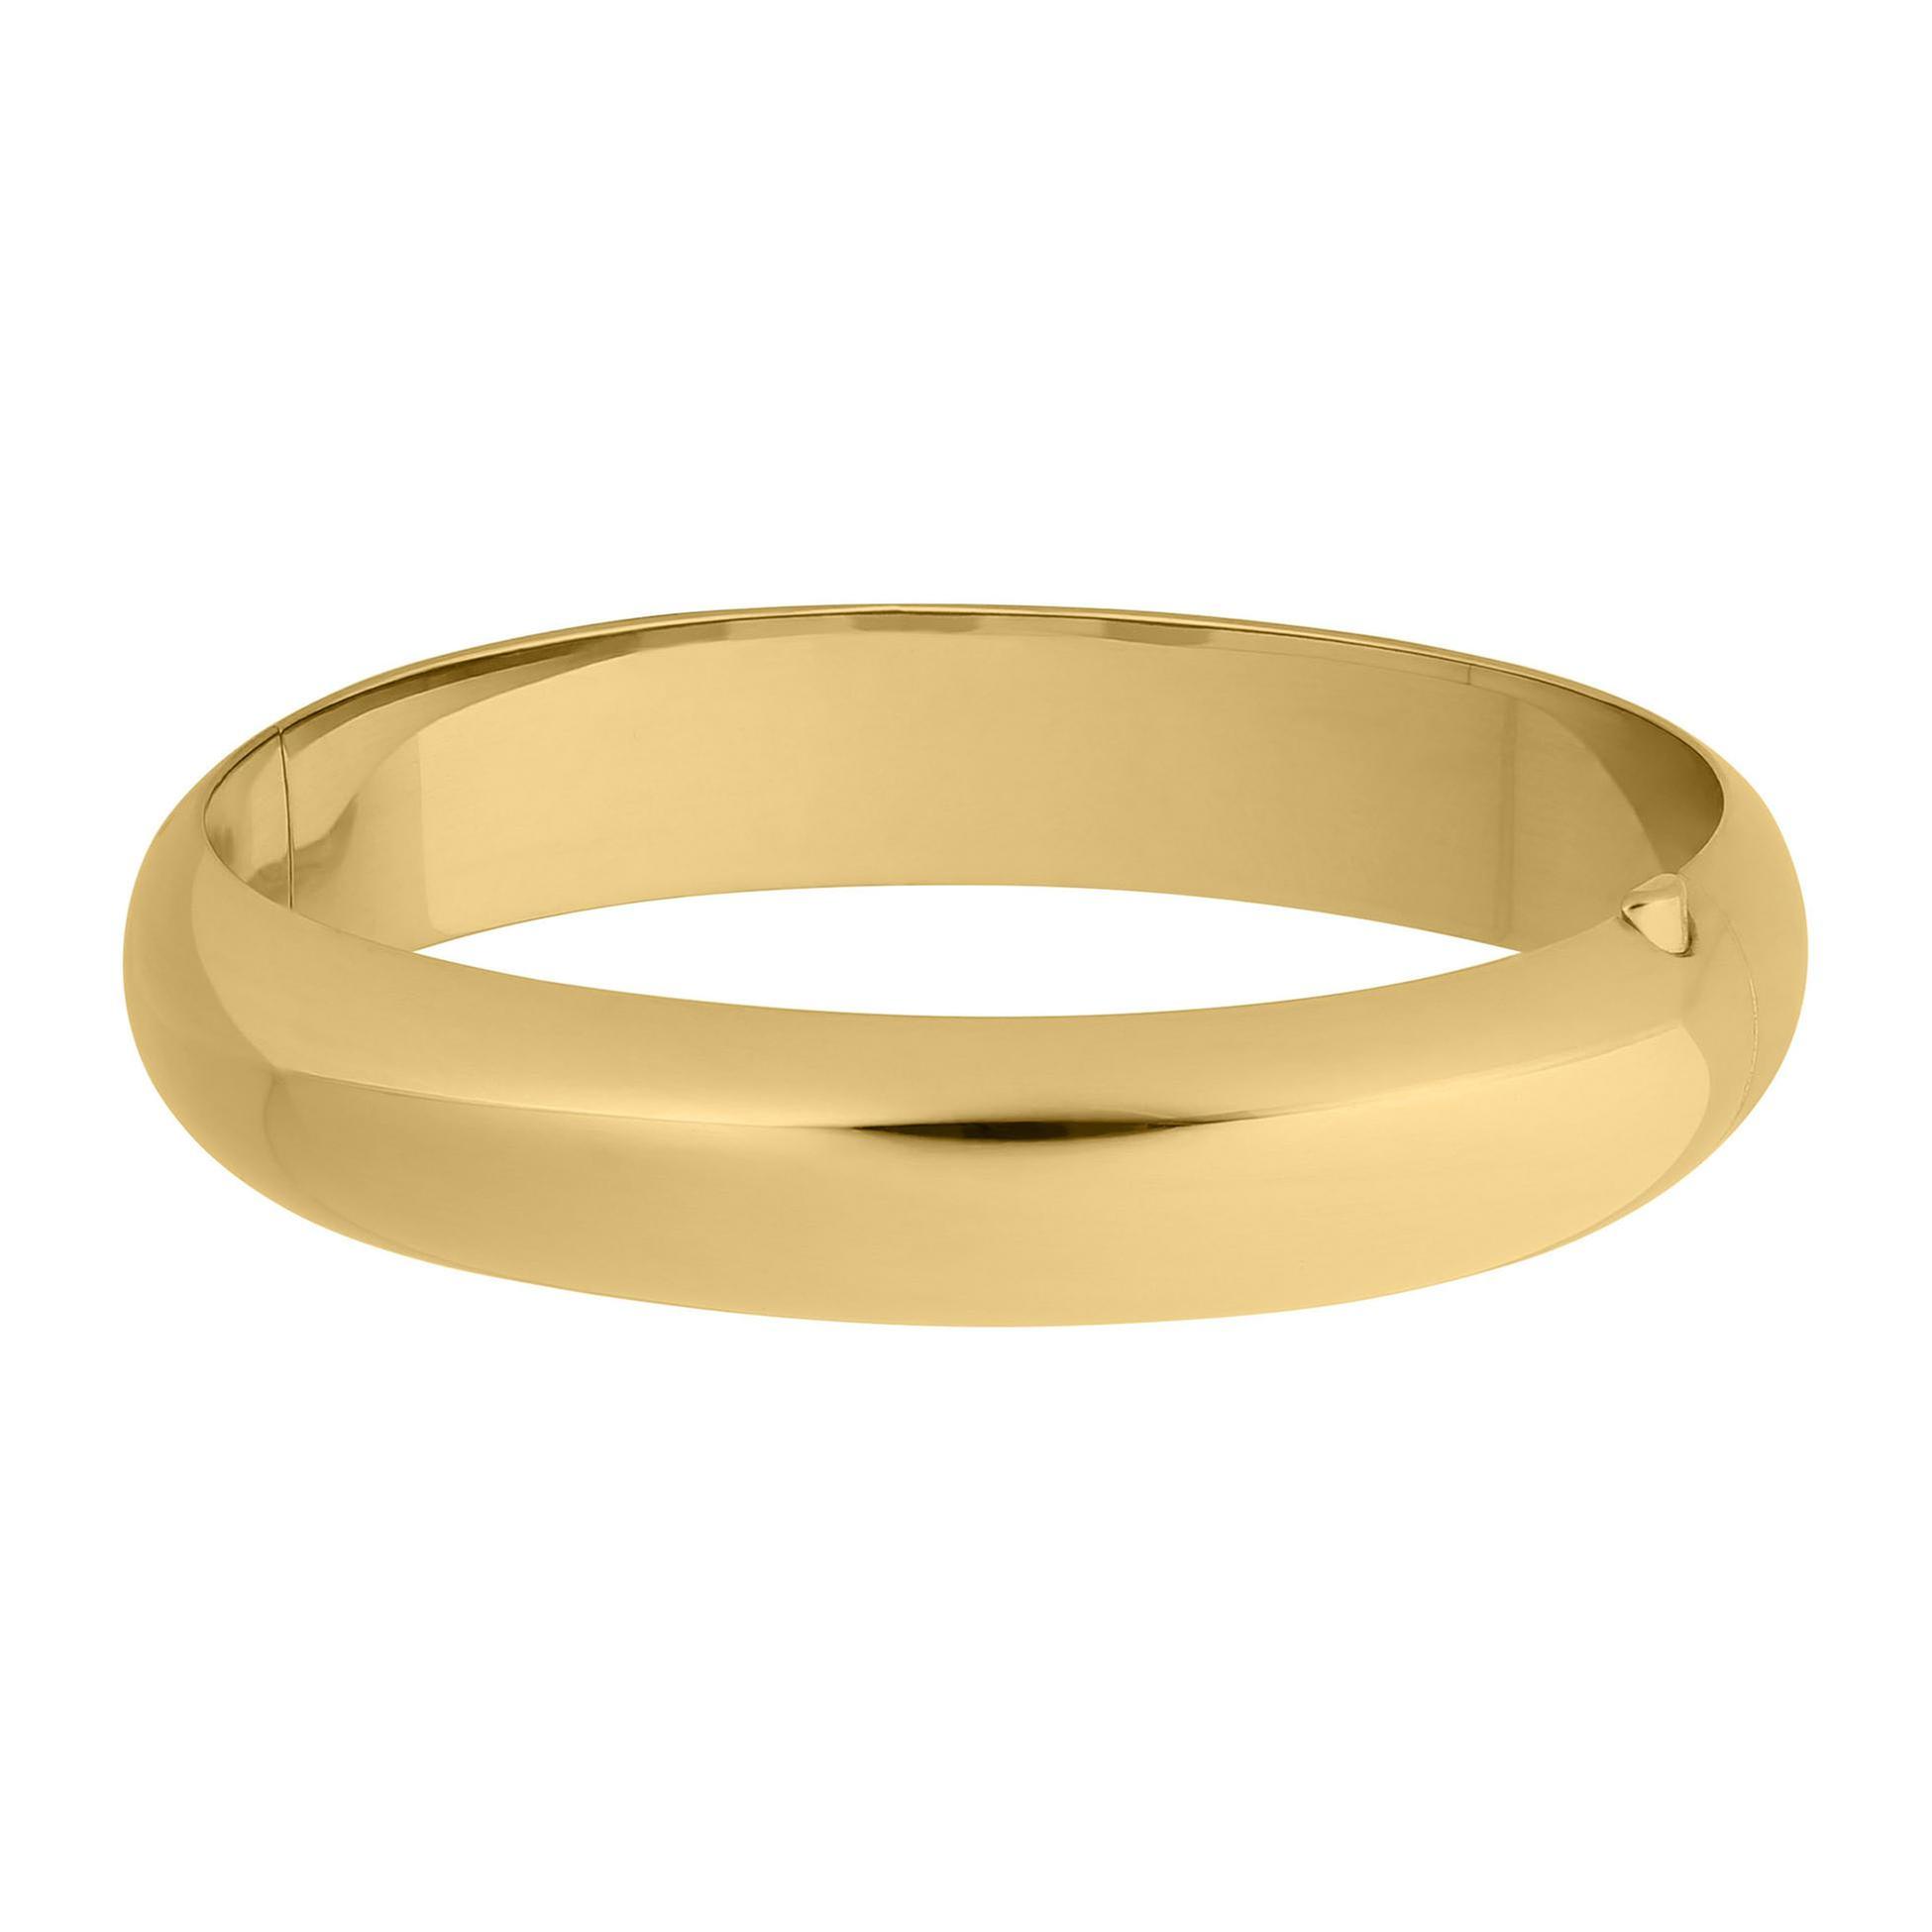 Polished Gold Filled Bangle Bracelet | 12mm